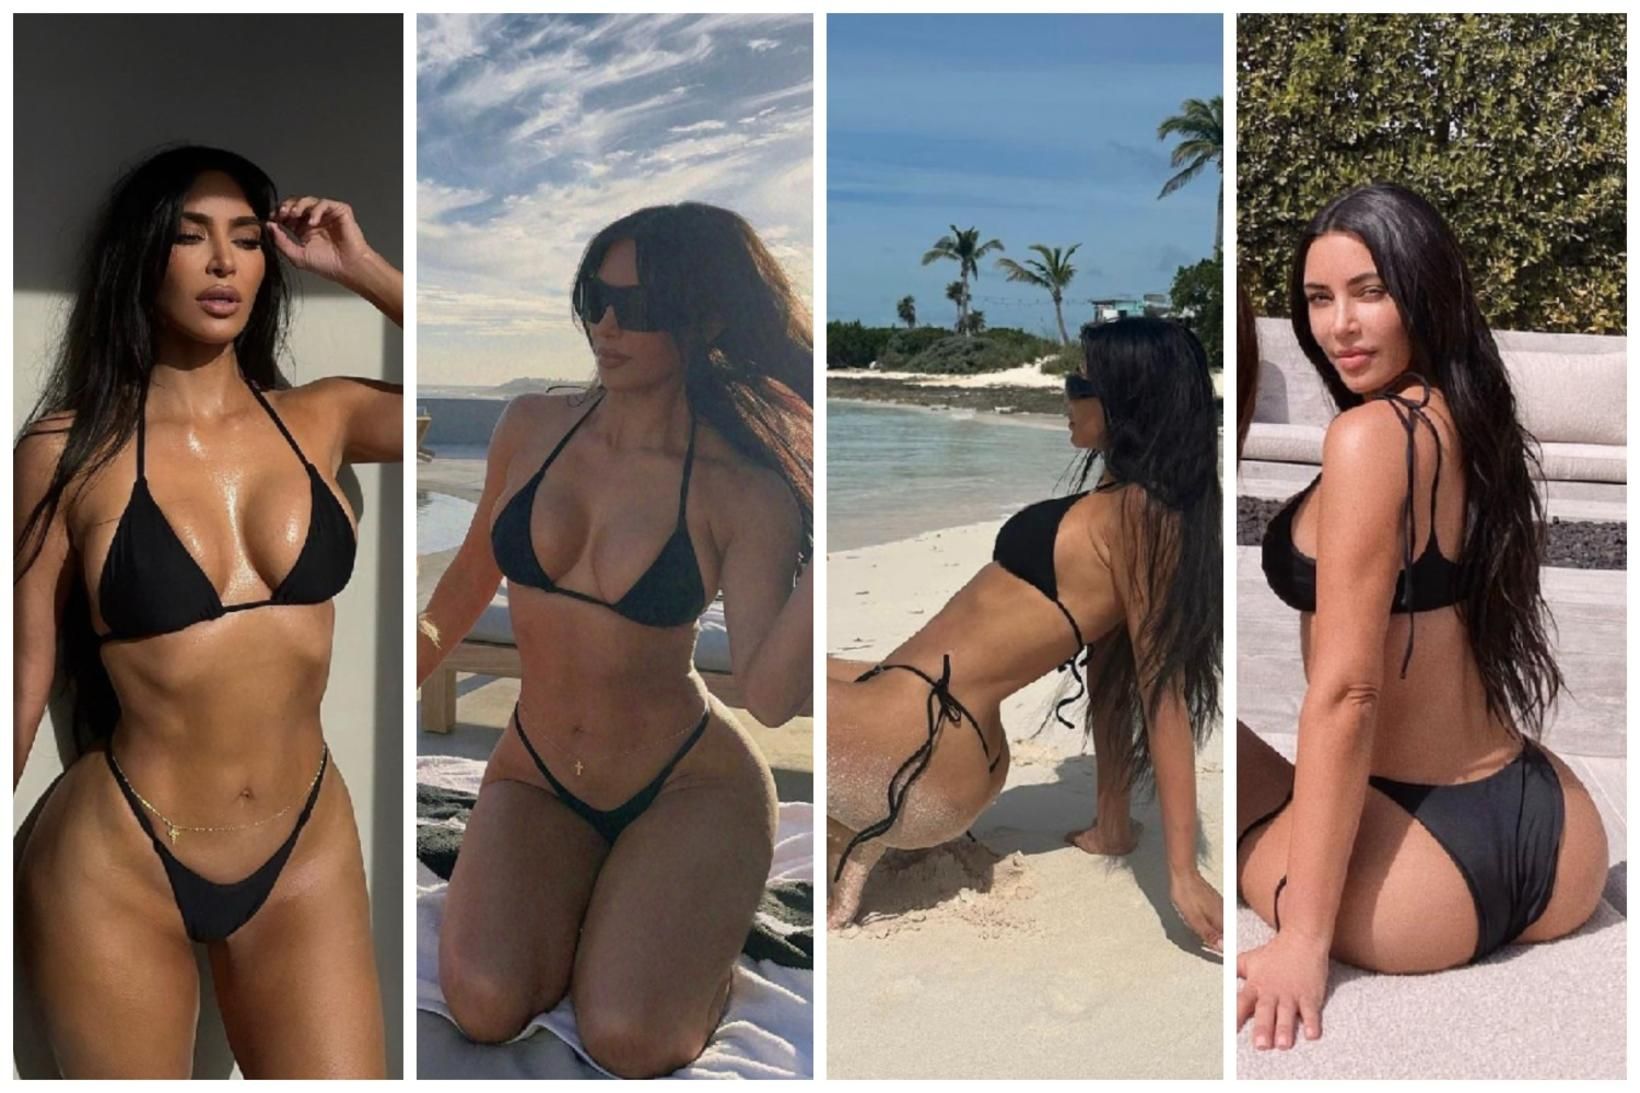 Kim Kardashian lumar á óvæntu tískuráði á Instagram-reikningi sínum.